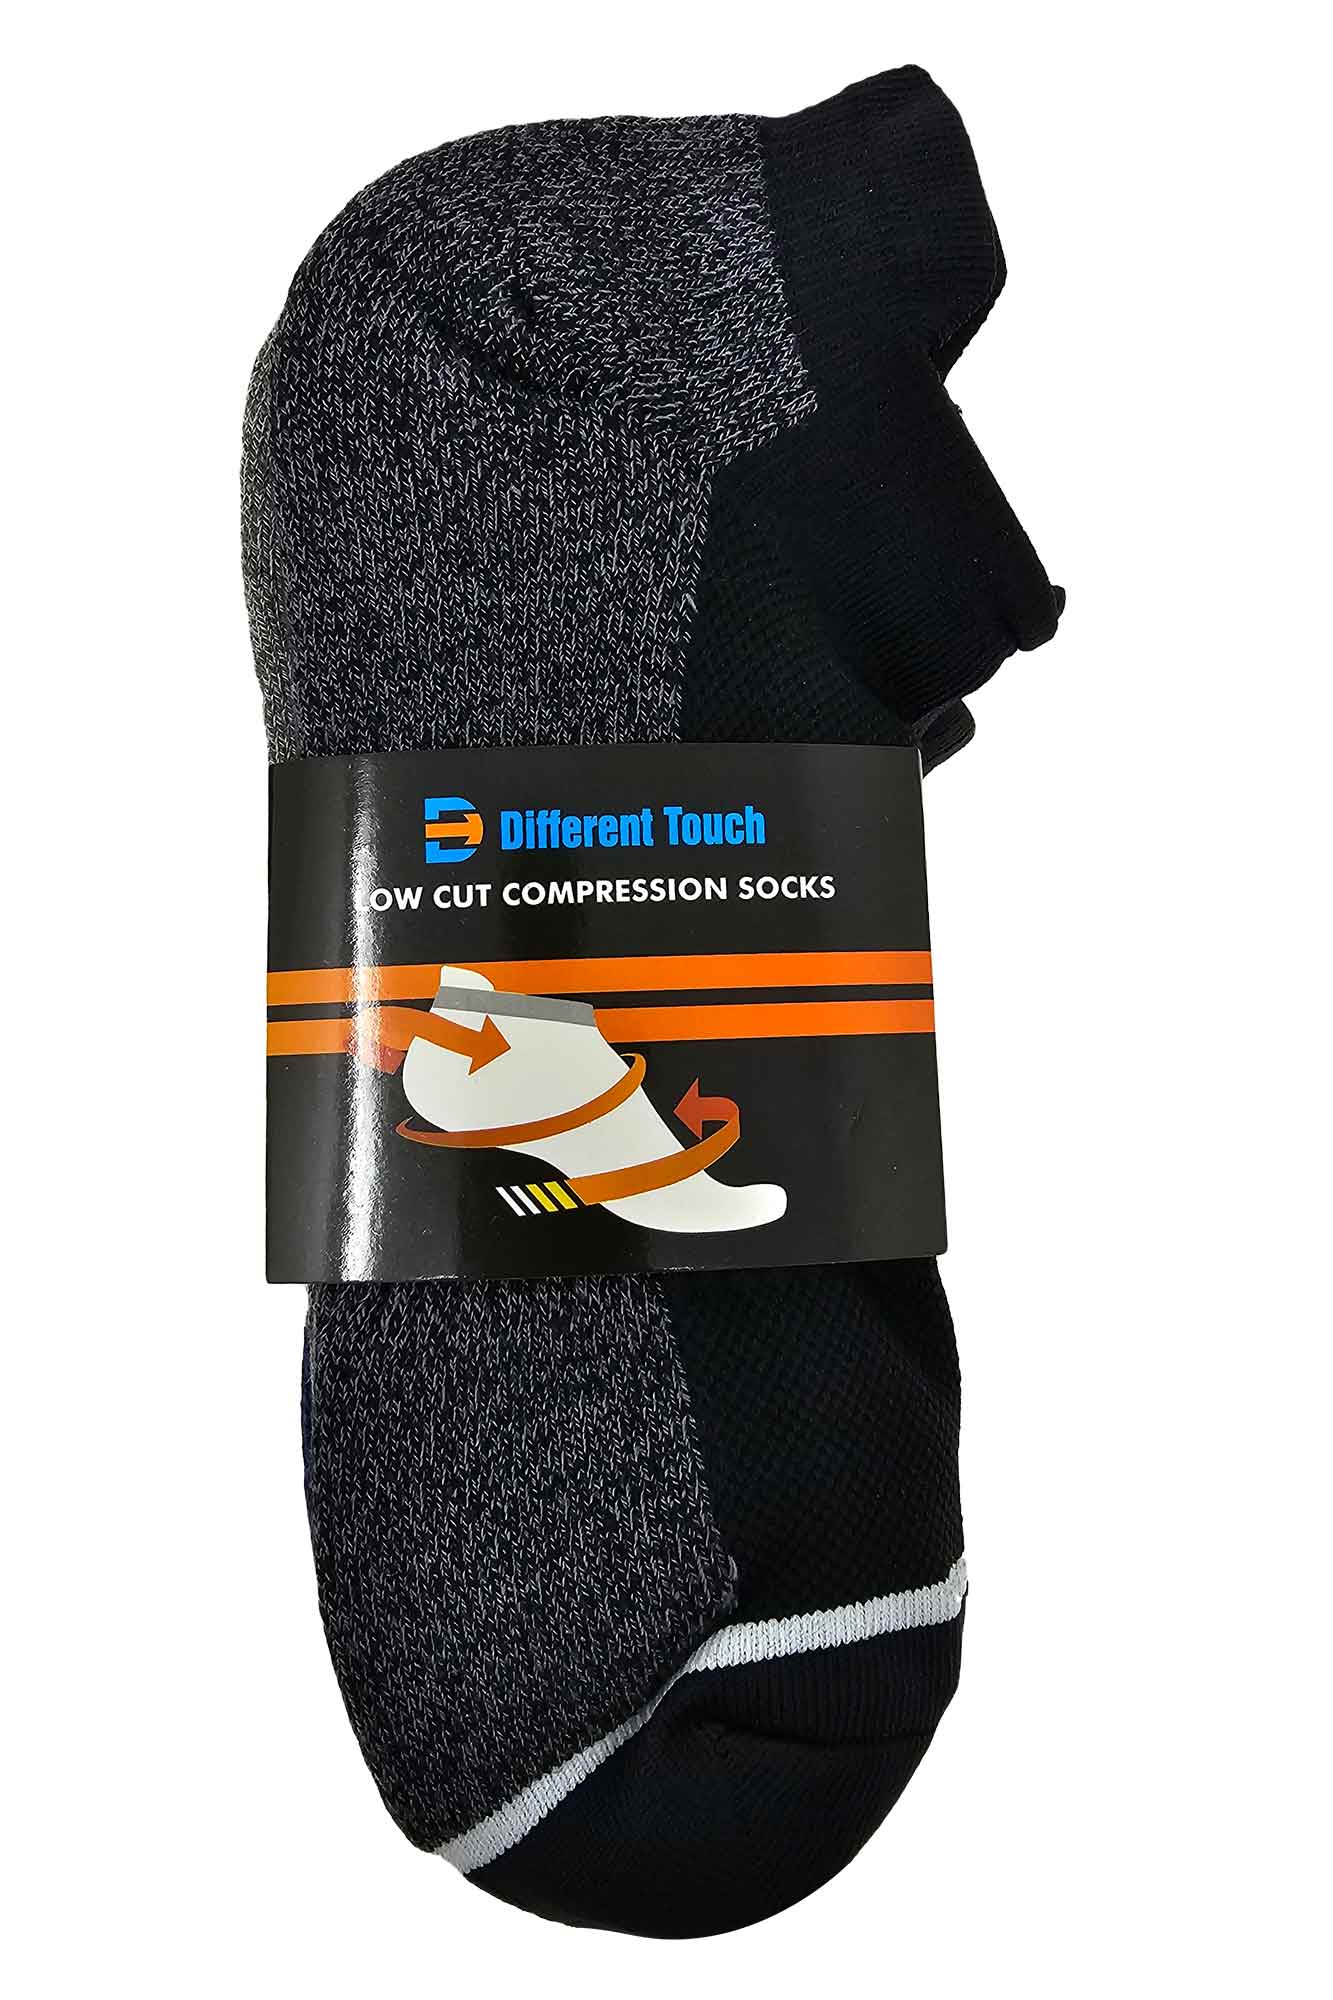 Best Ankle Compression Socks for Men